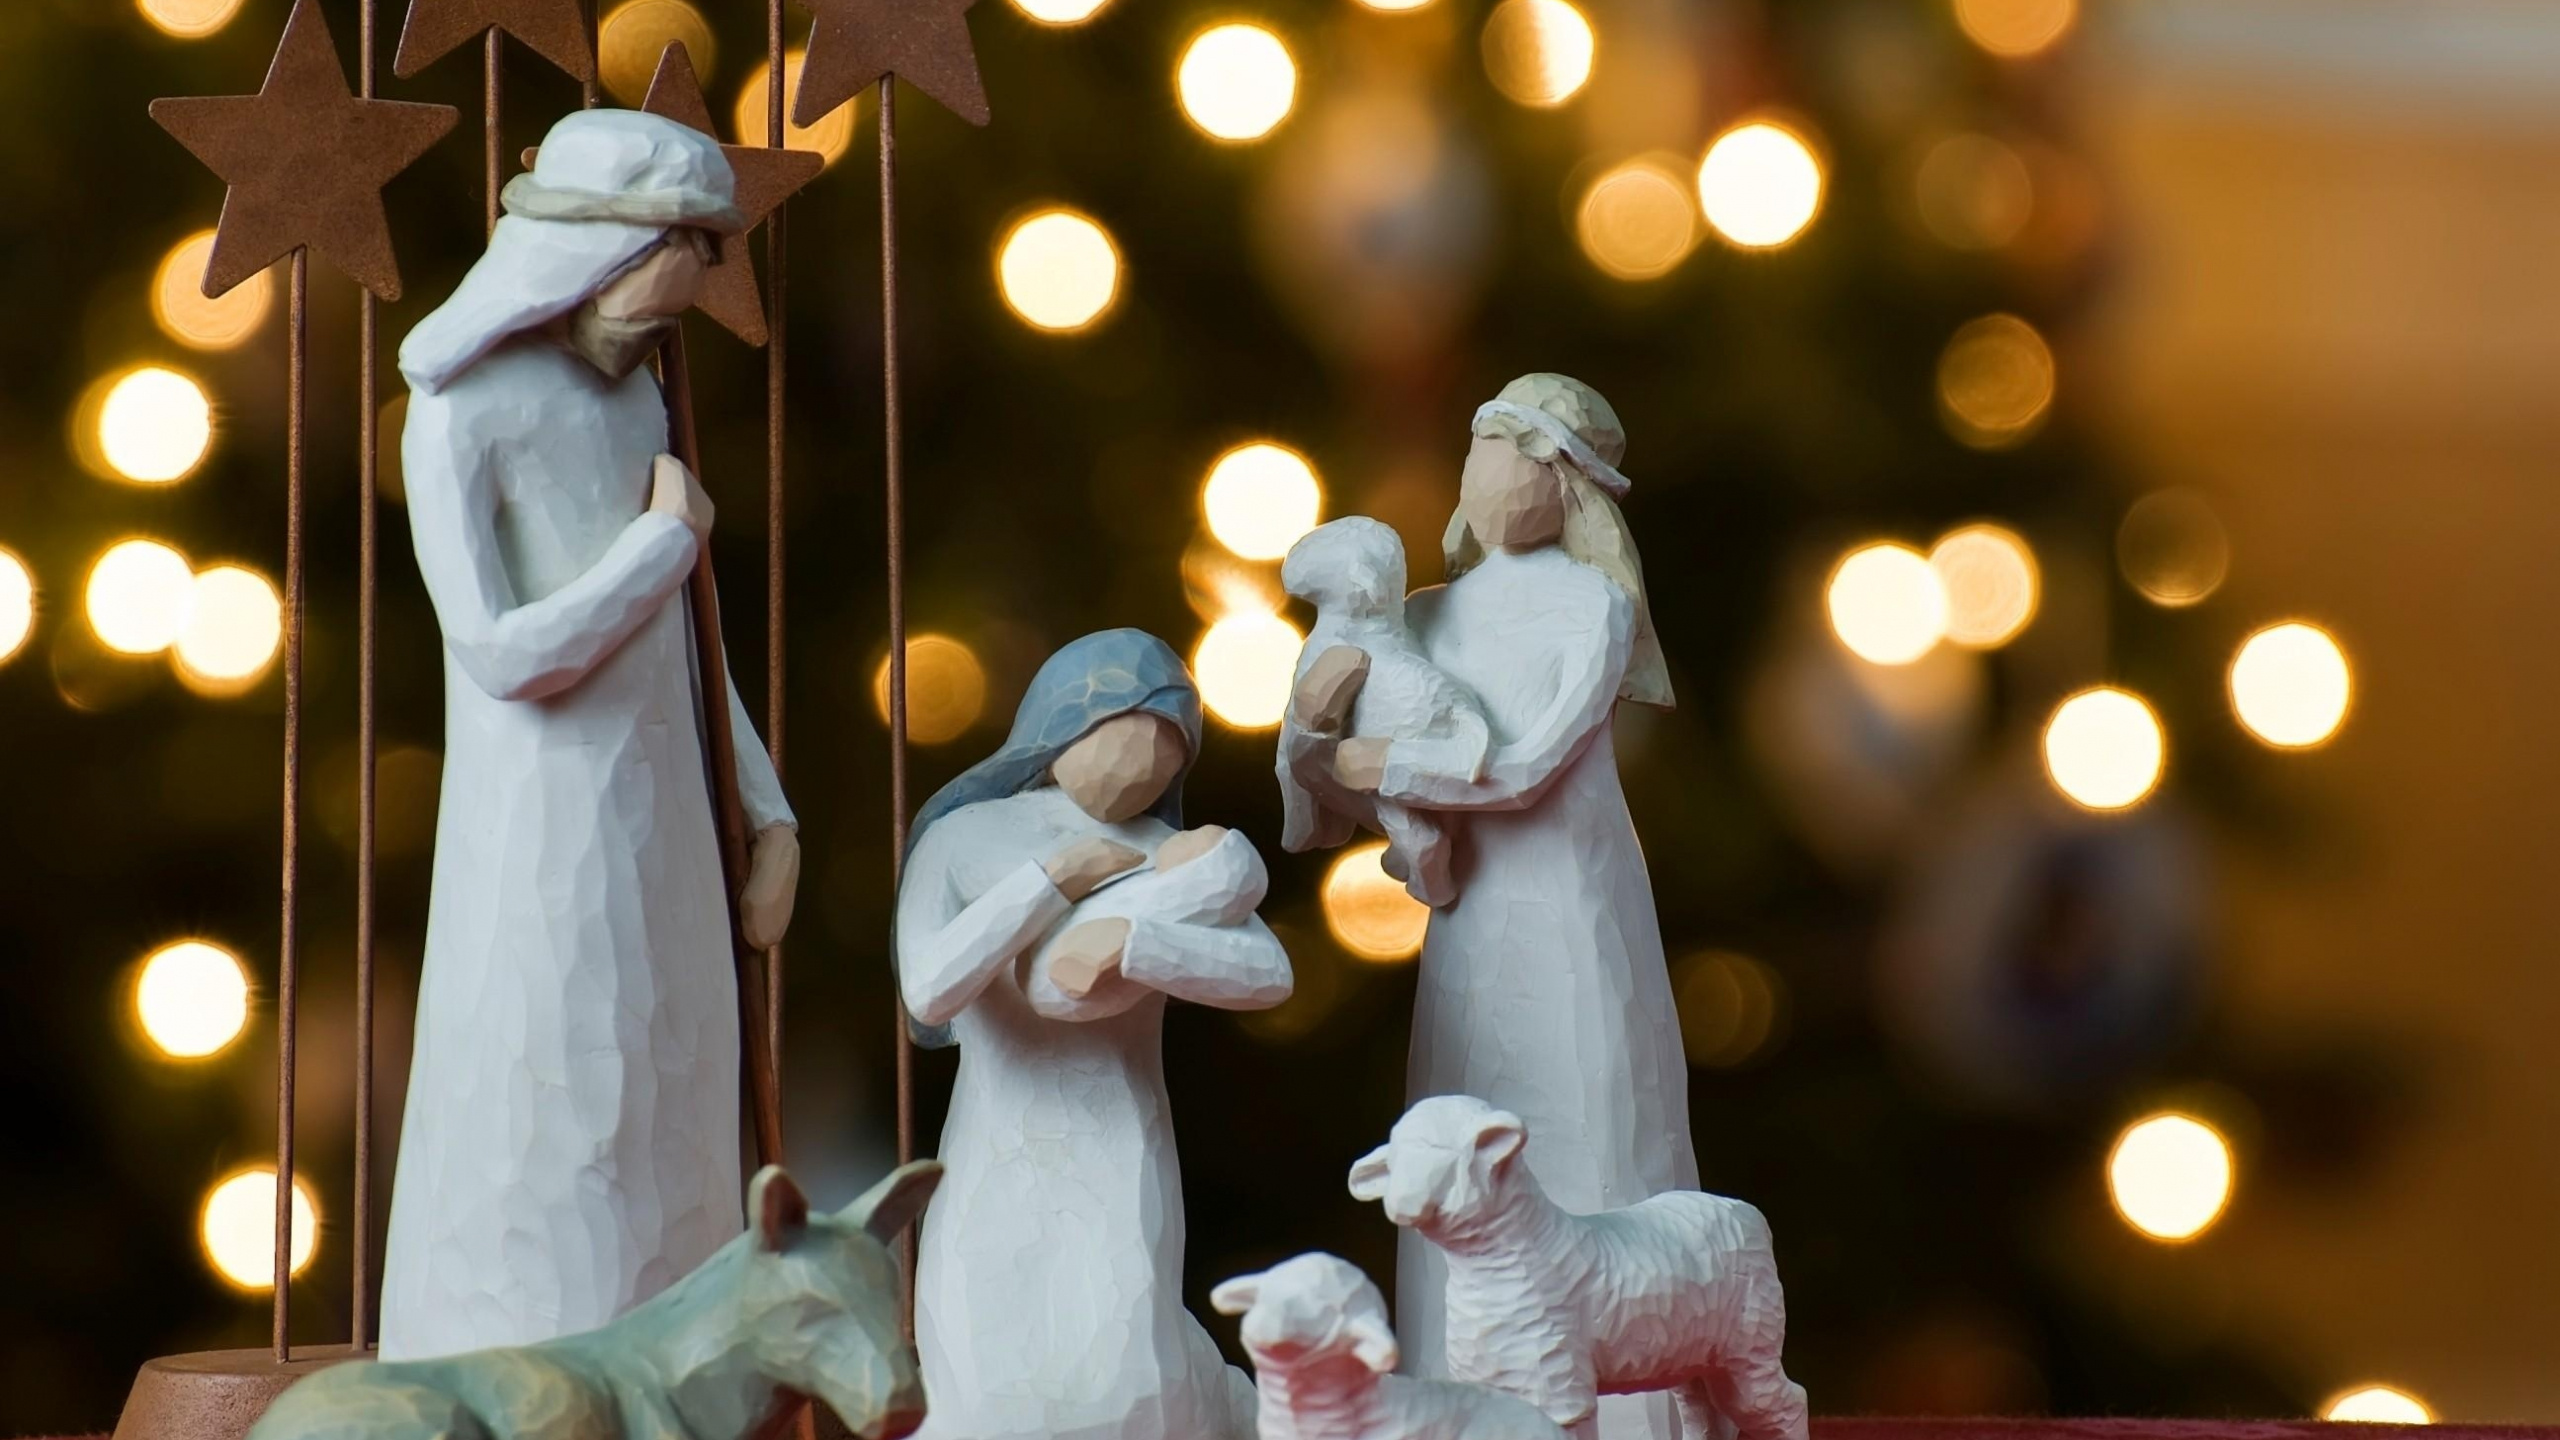 Geburt Jesu, Krippe, Weihnachtsdekoration, Tradition, Veranstaltung. Wallpaper in 2560x1440 Resolution